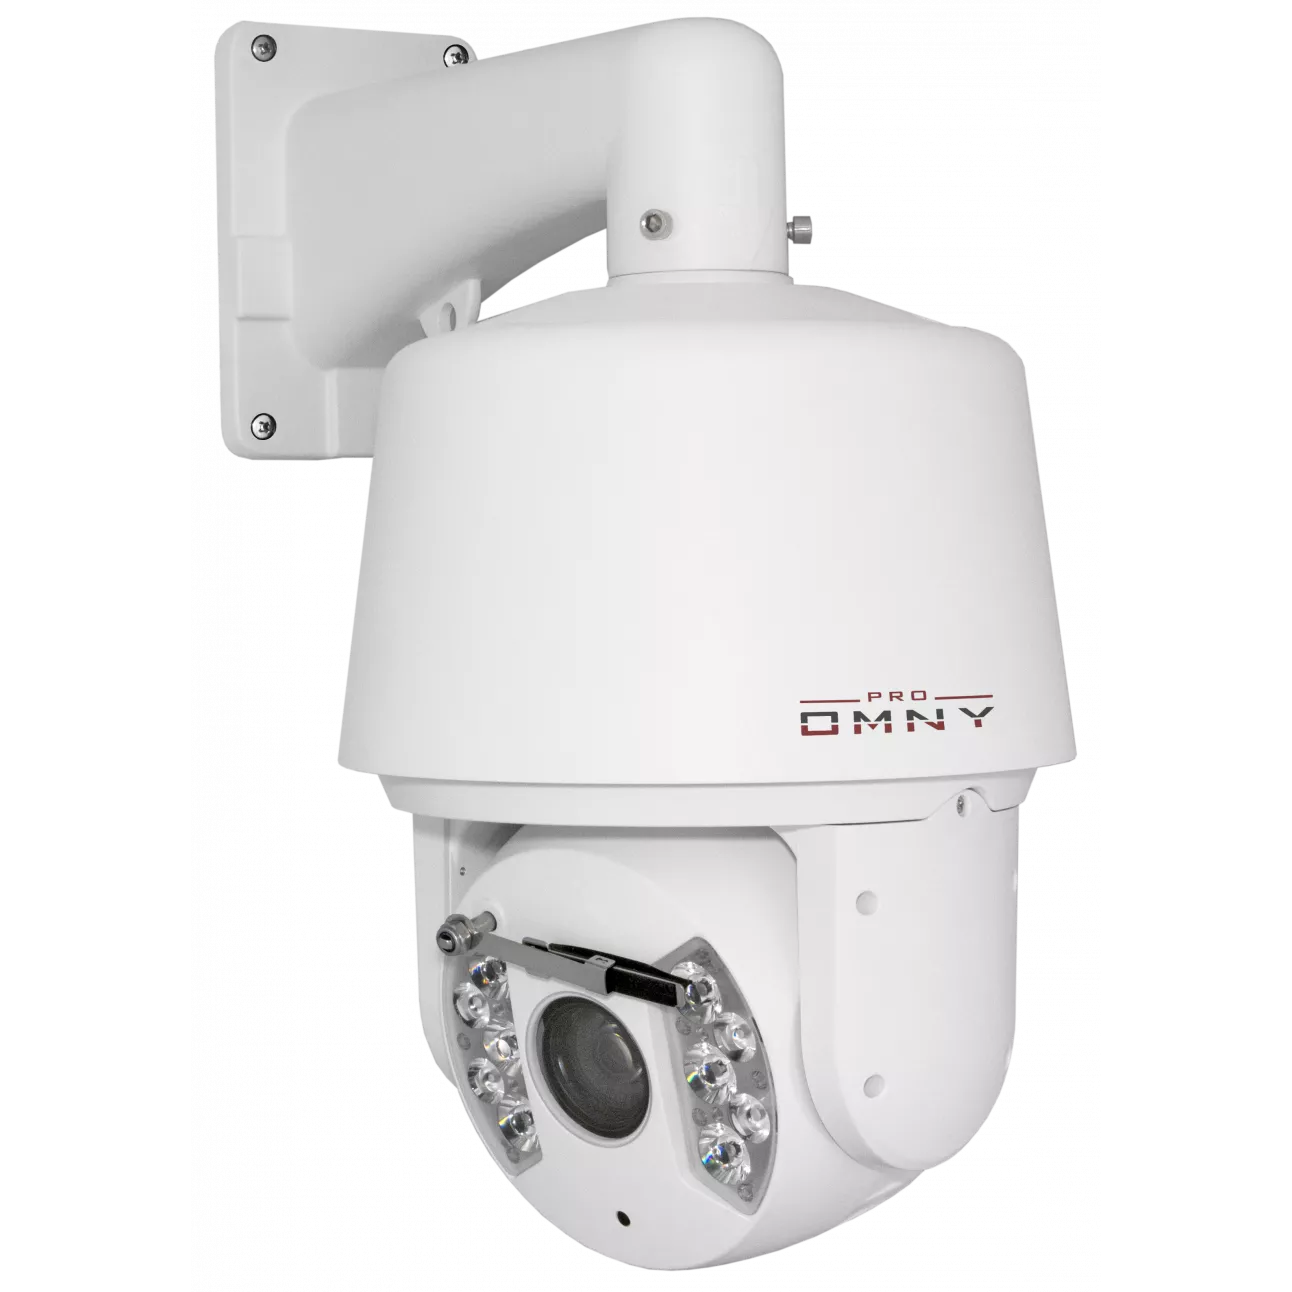 Проектная IP камера OMNY 2030-IR PTZ STARLIGHT cкоростная купольная поворотная 2Мп, 30х зум,ИК подсветка до 150м,с аналитикой, 24V AC (уценка)